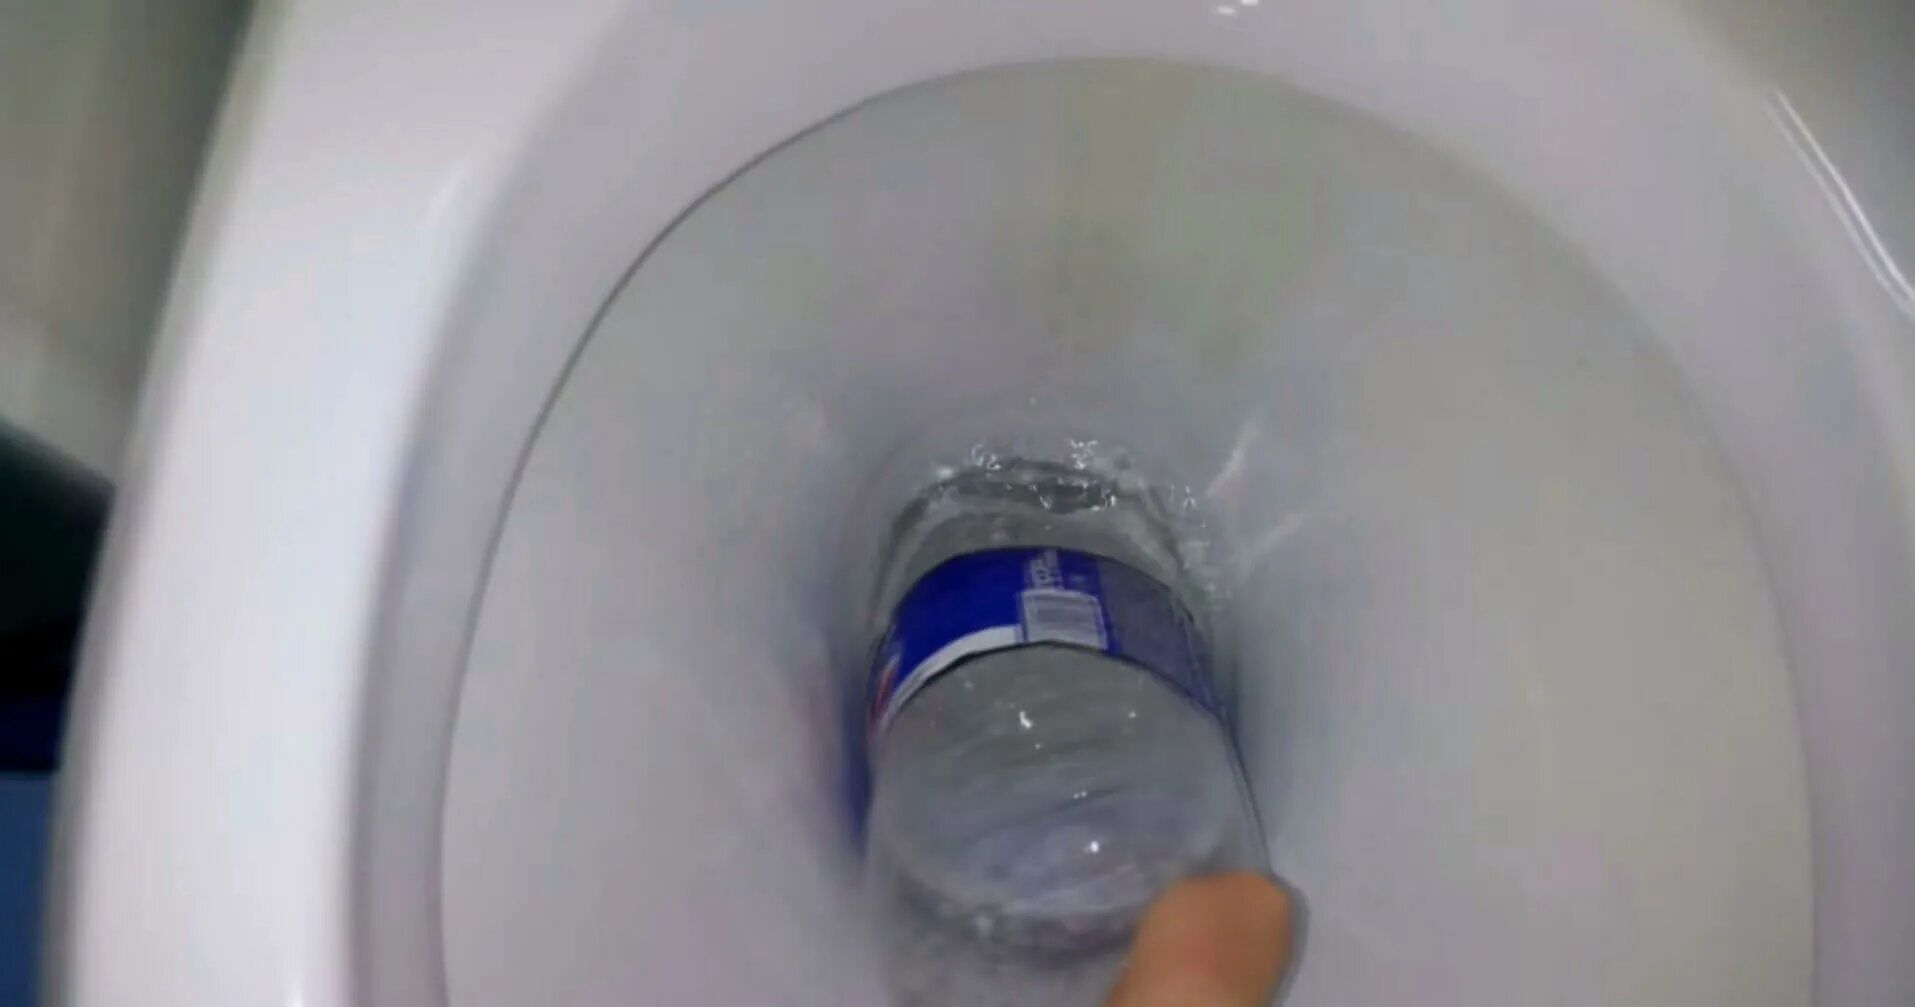 Вантуз из пластиковой бутылки для унитаза. В туалете вода поднимается